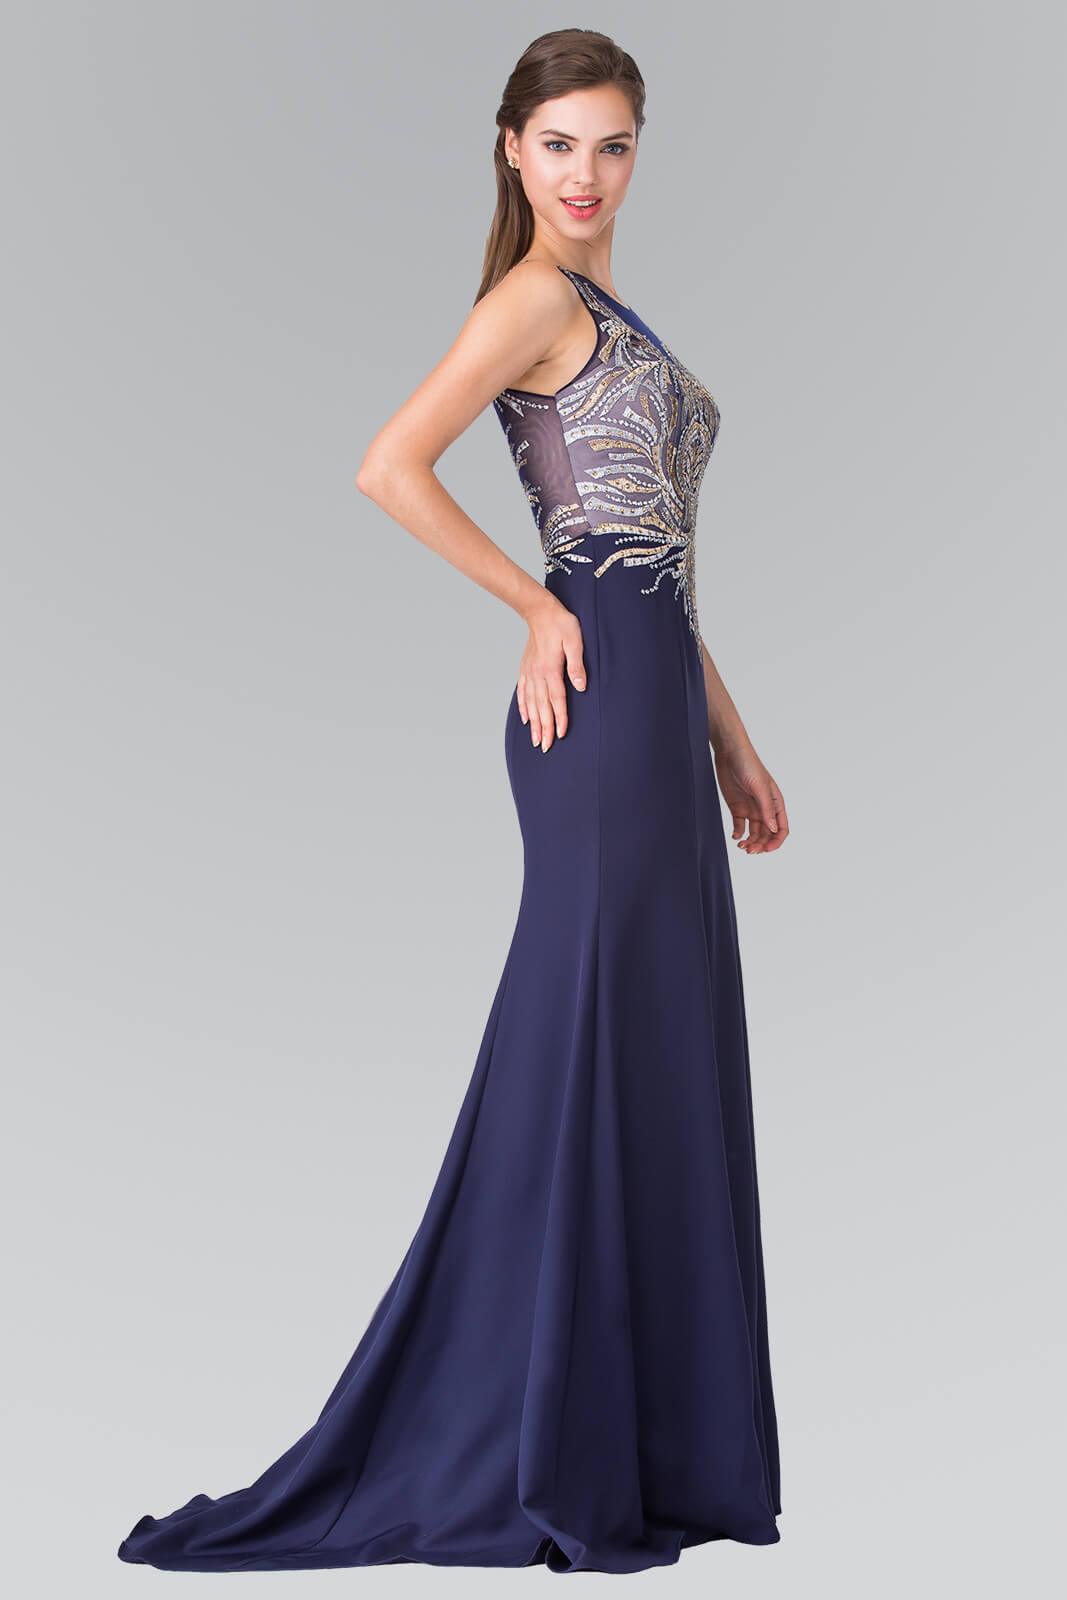 Prom Long Evening Dress Formal Gown - The Dress Outlet Elizabeth K